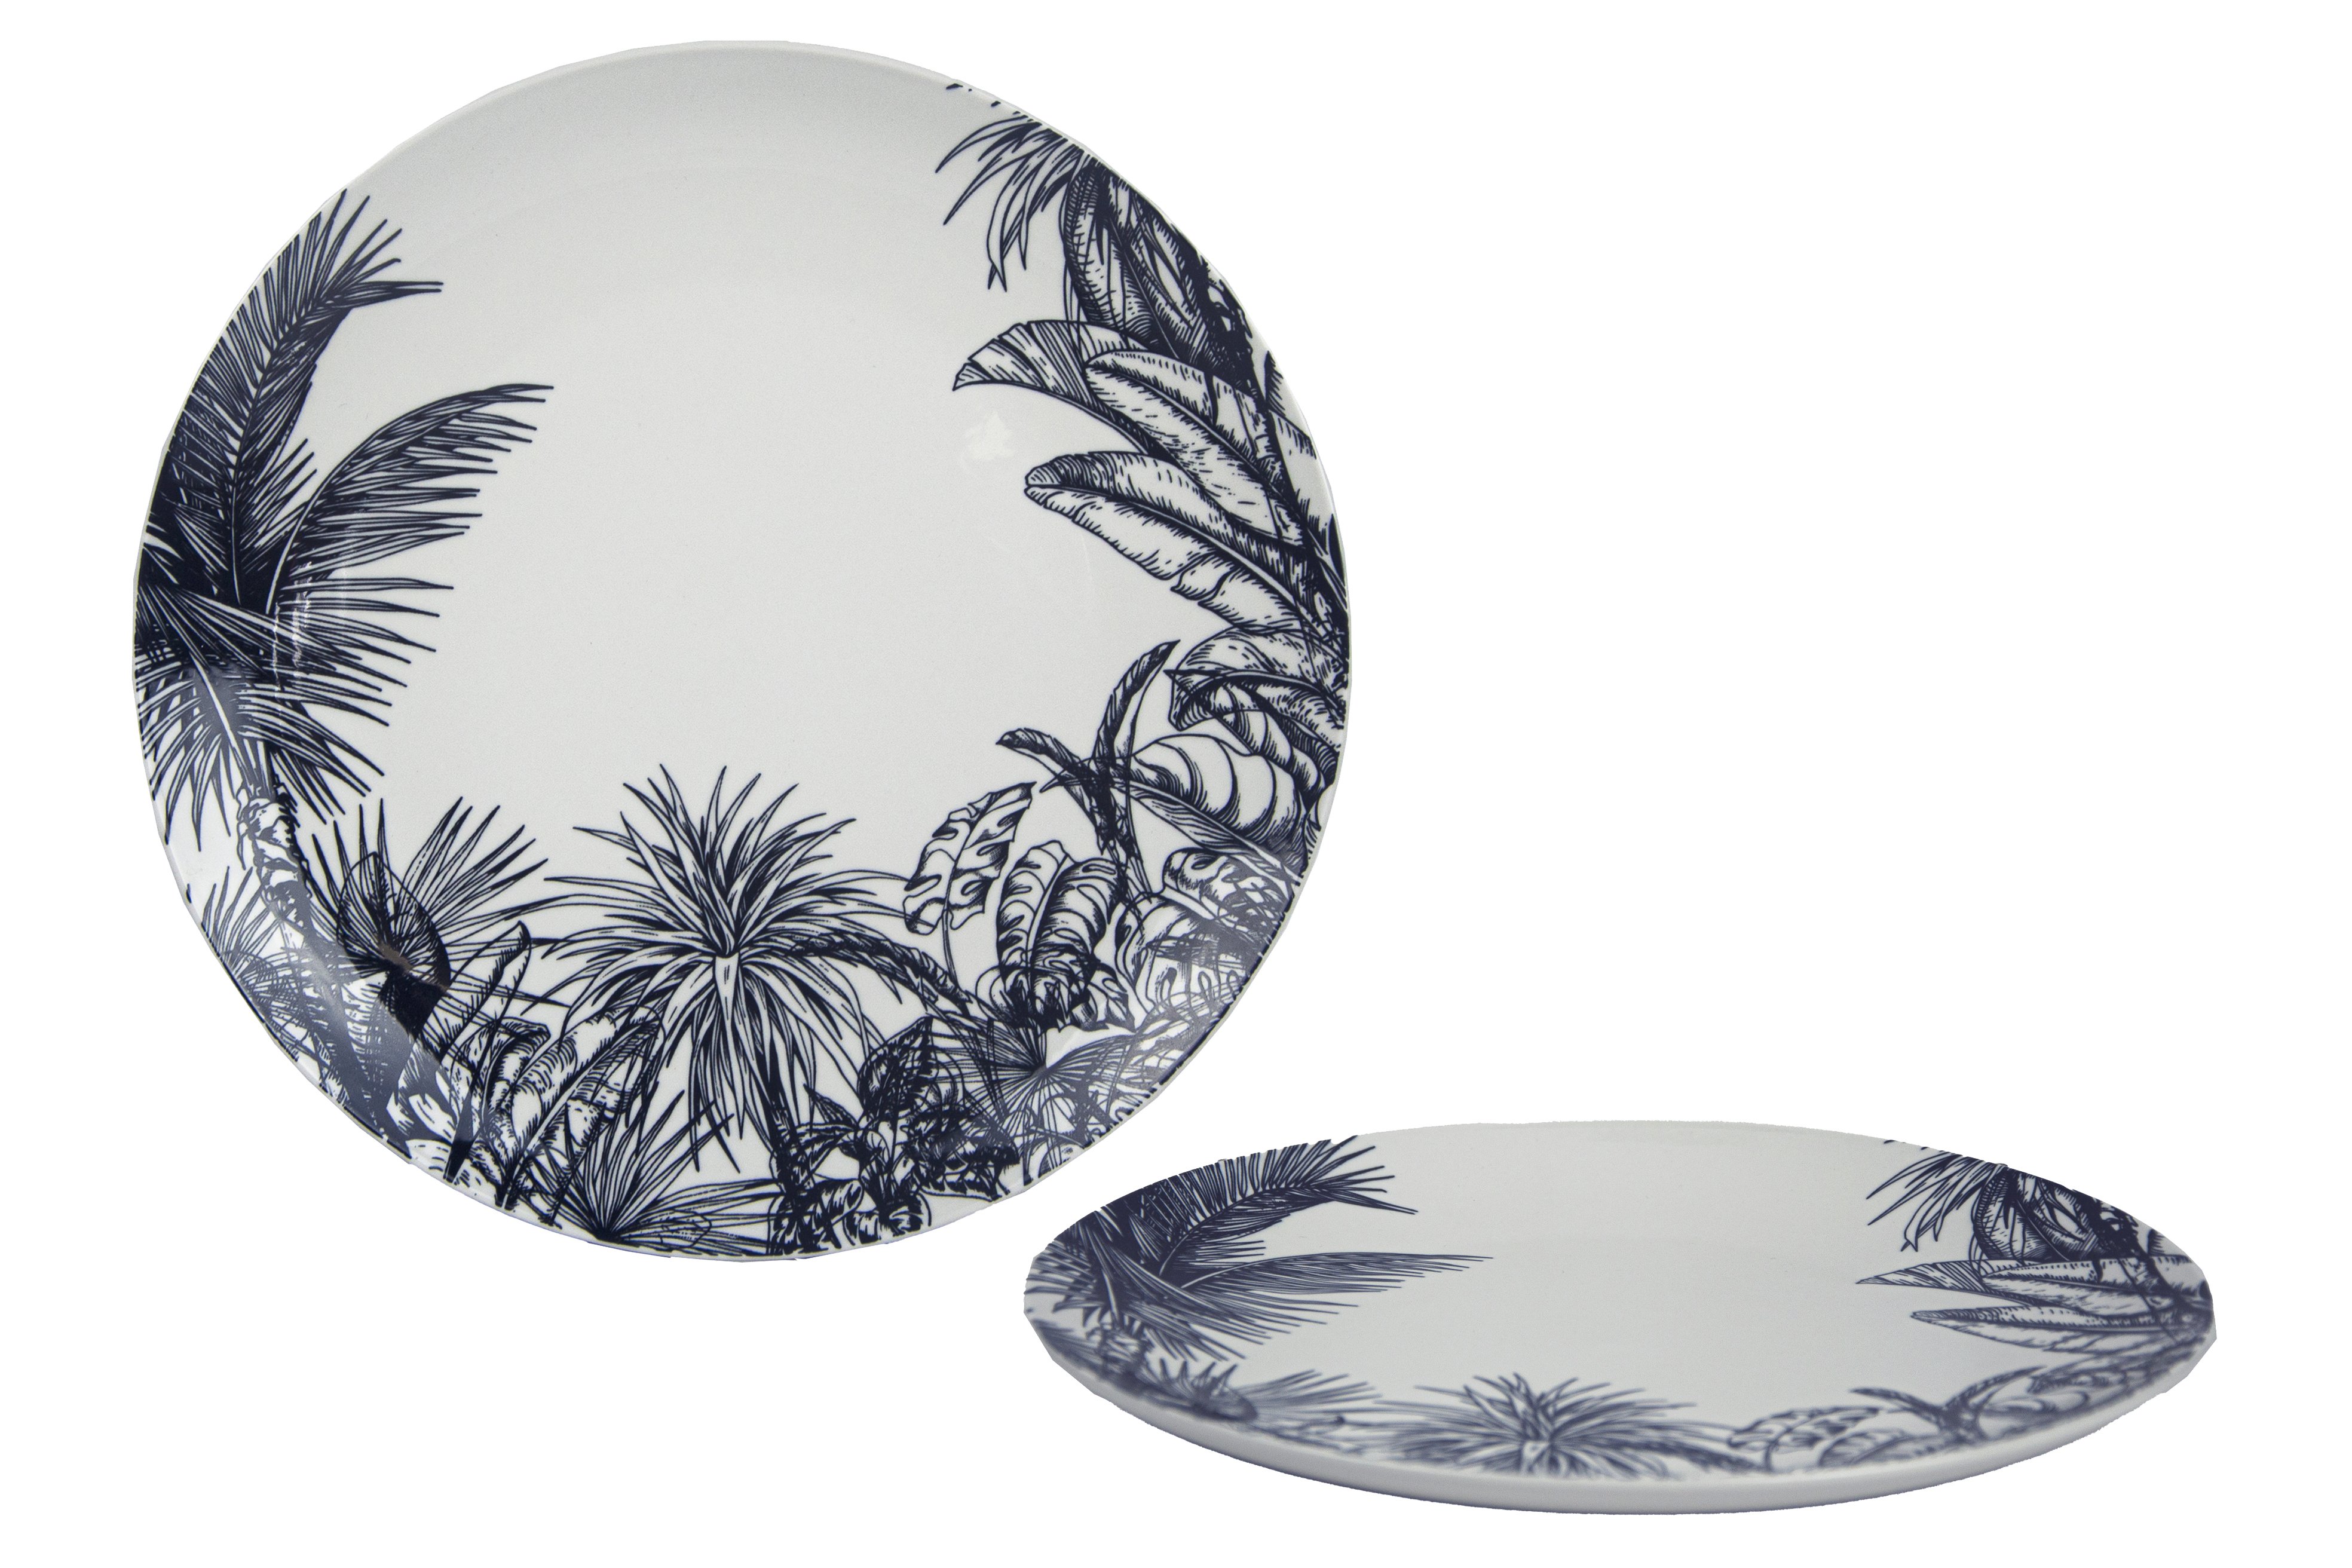 Grande assiette plate en mélamine avec des motifs jungle 28 cm